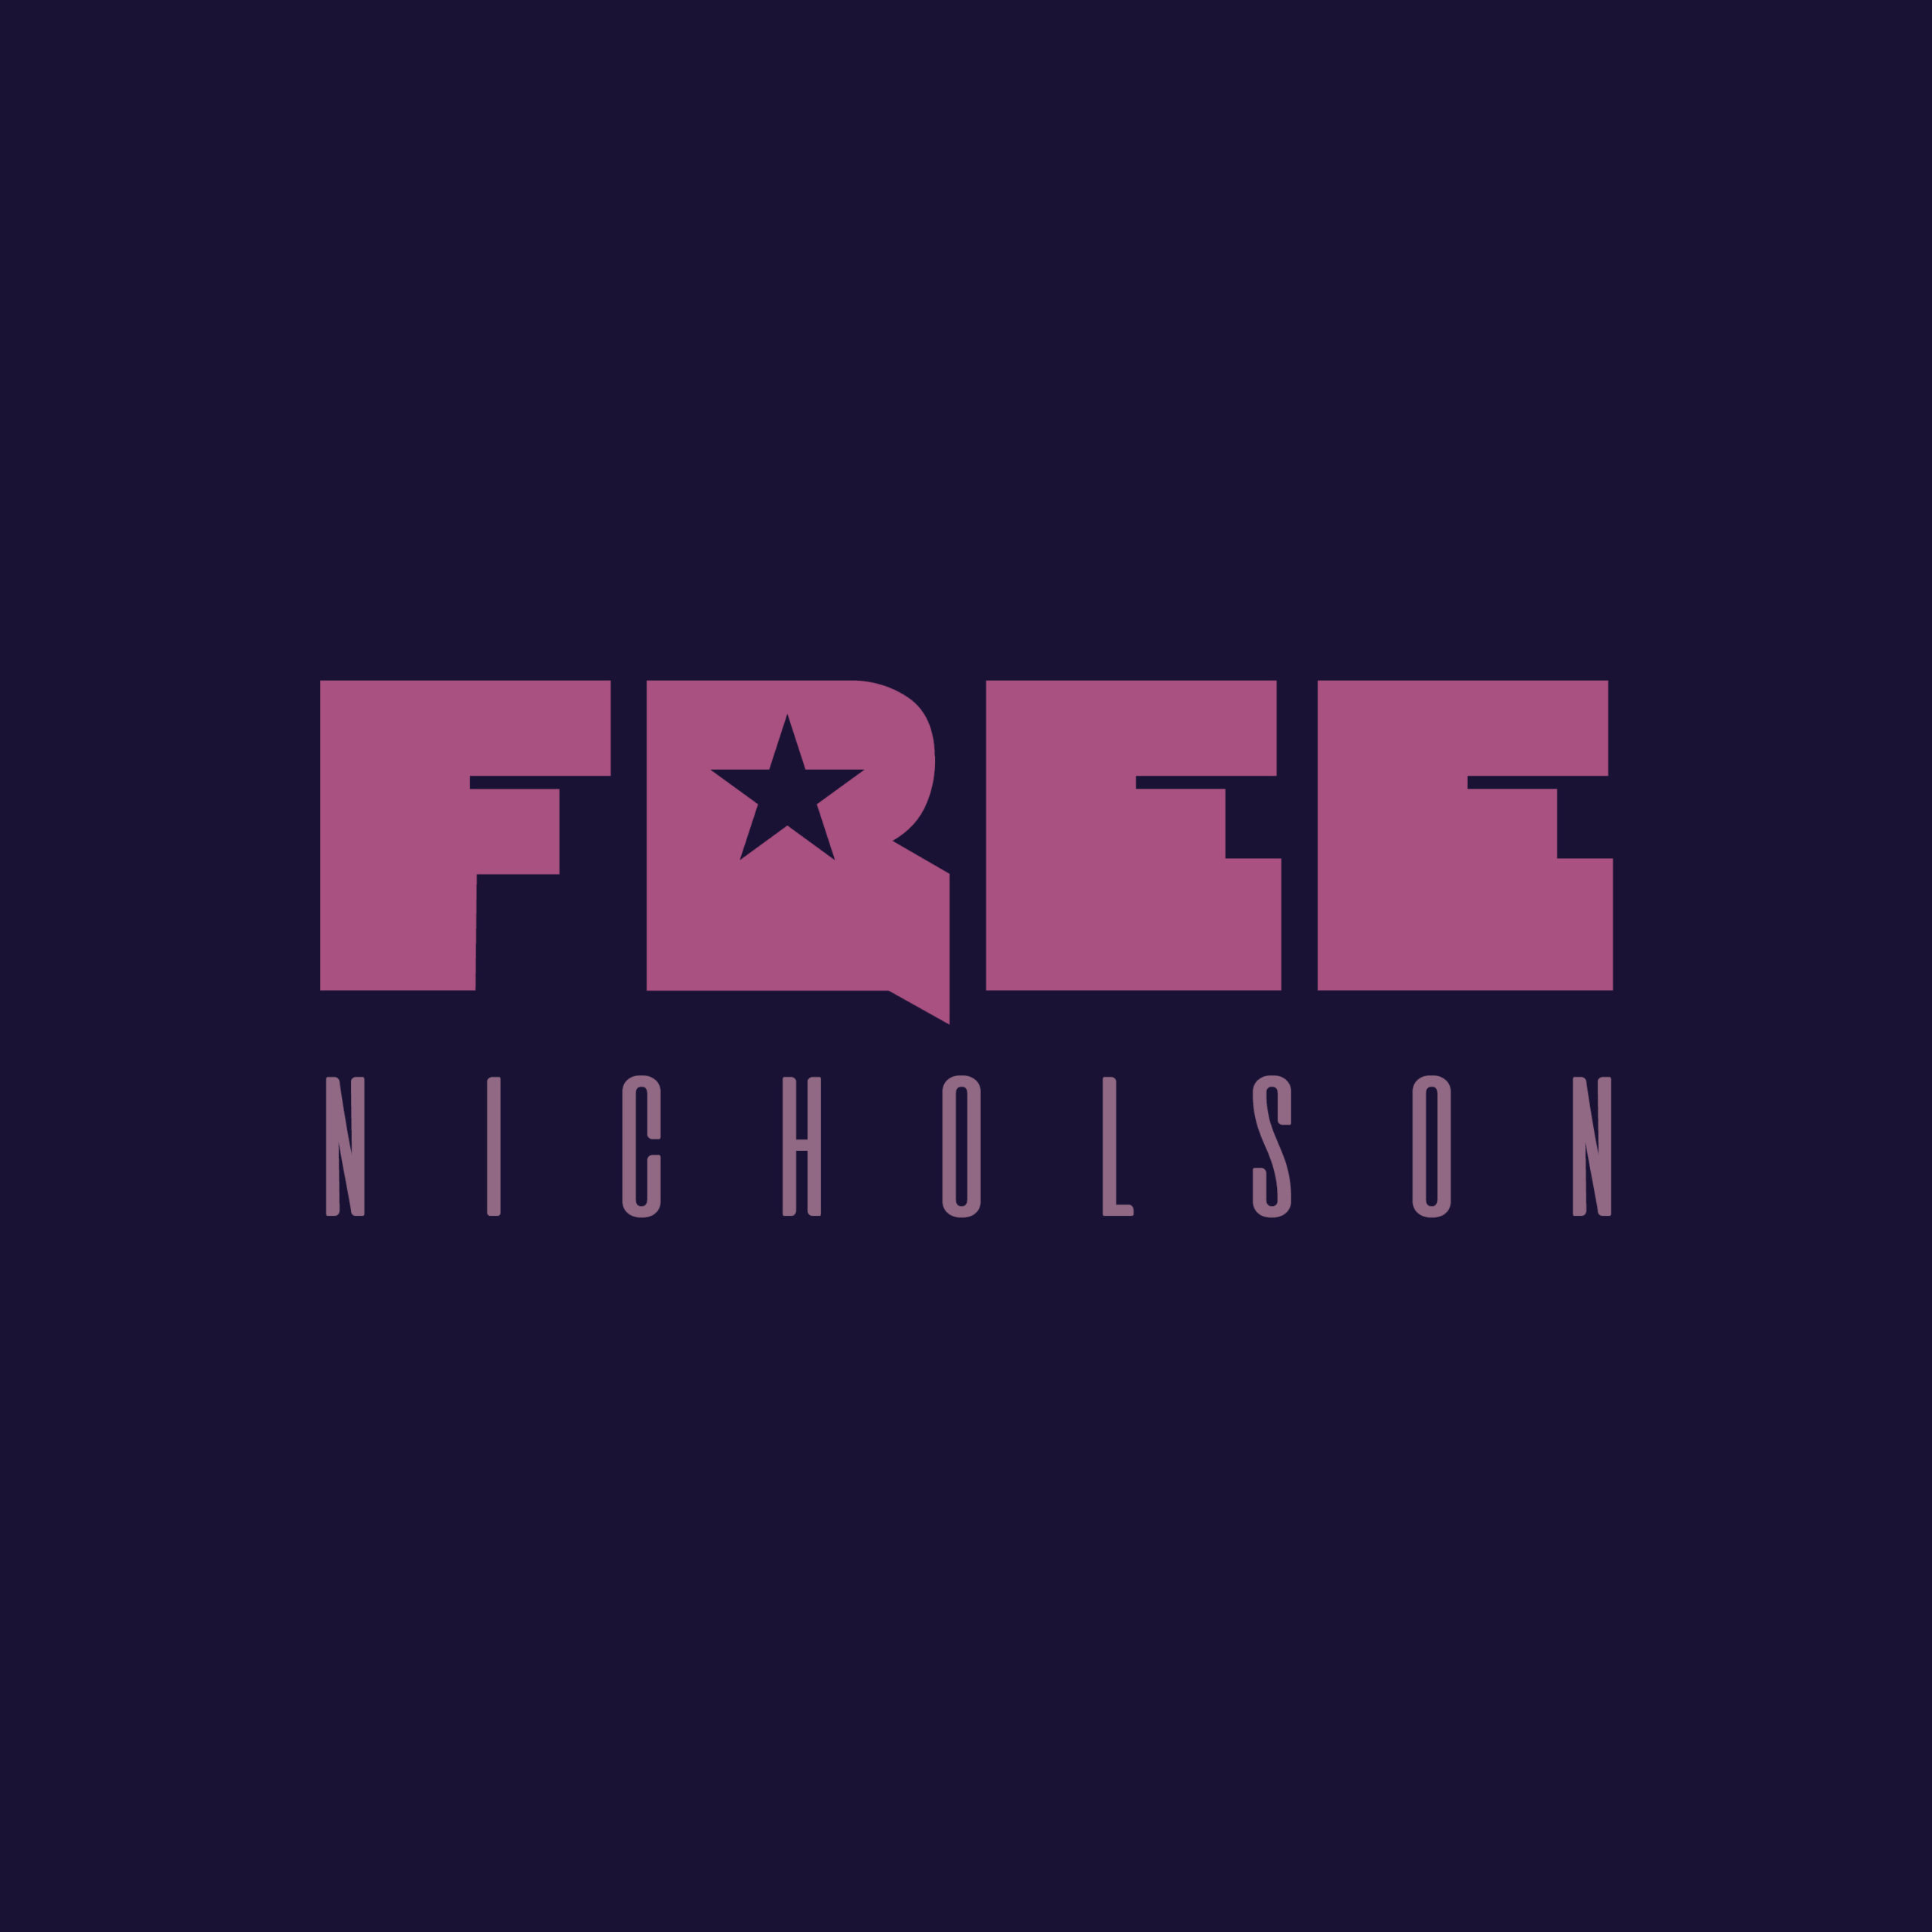 Nicholson - Free